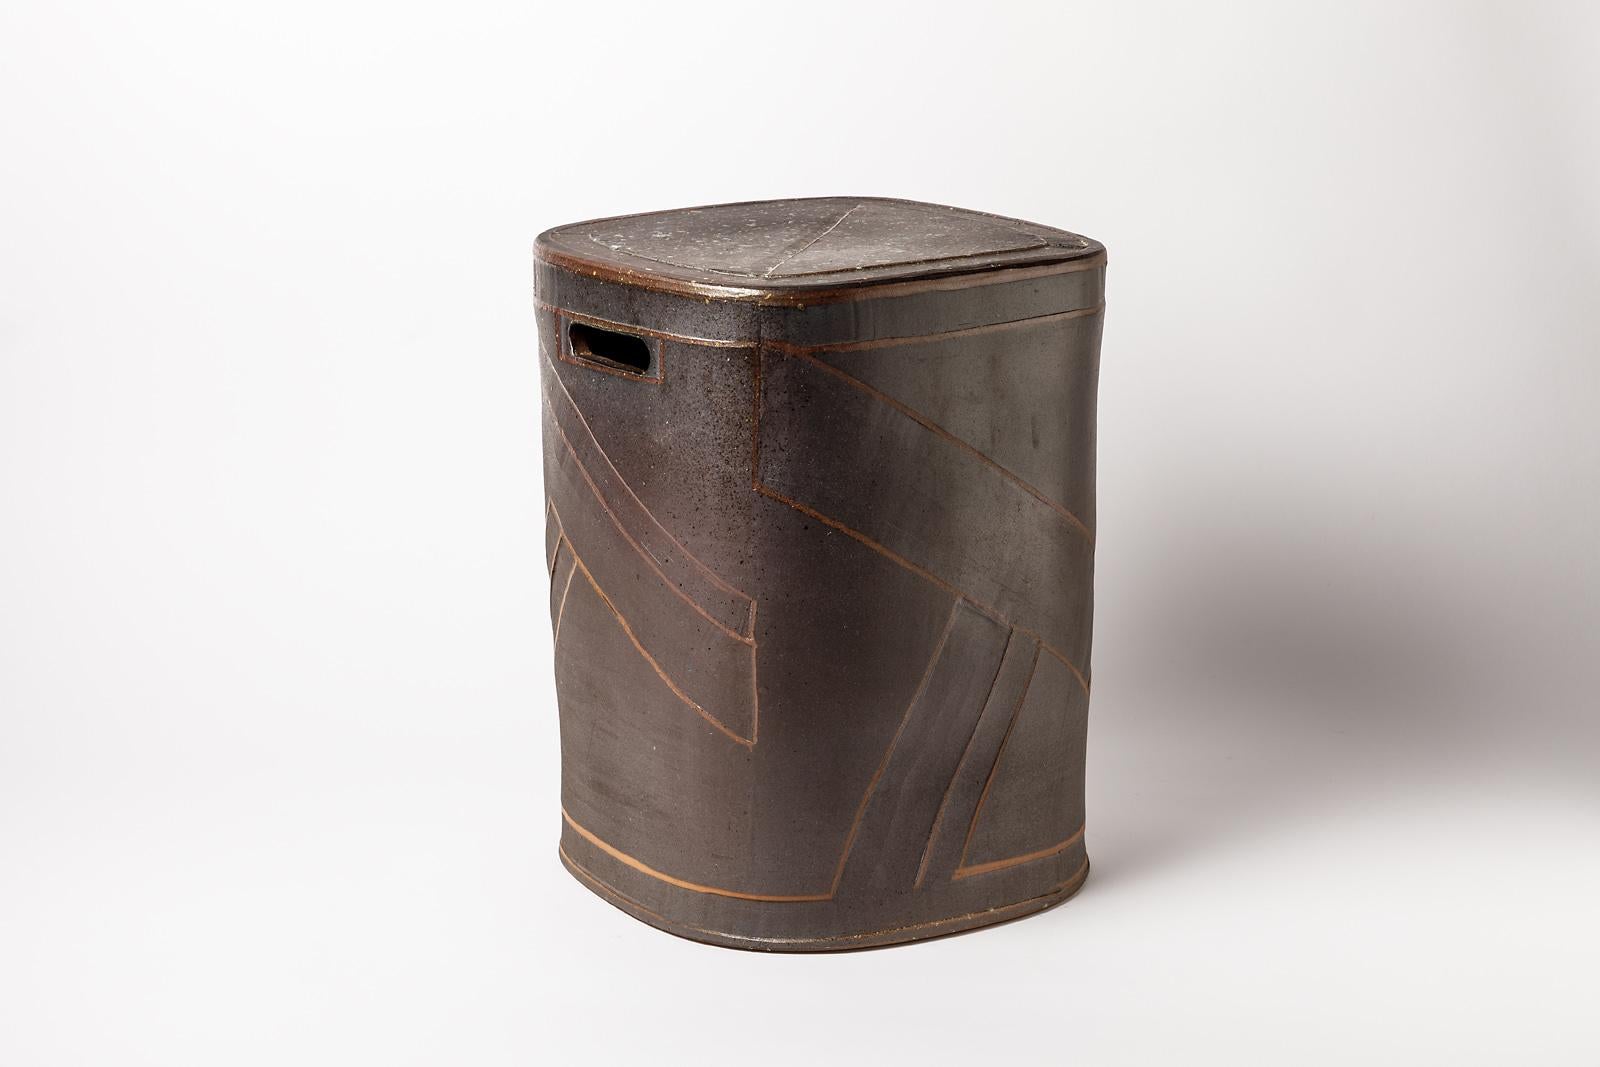 Contemporary Black Stoneware Ceramic Stool by Roz Herrin La Borne Design Table 5/11 For Sale